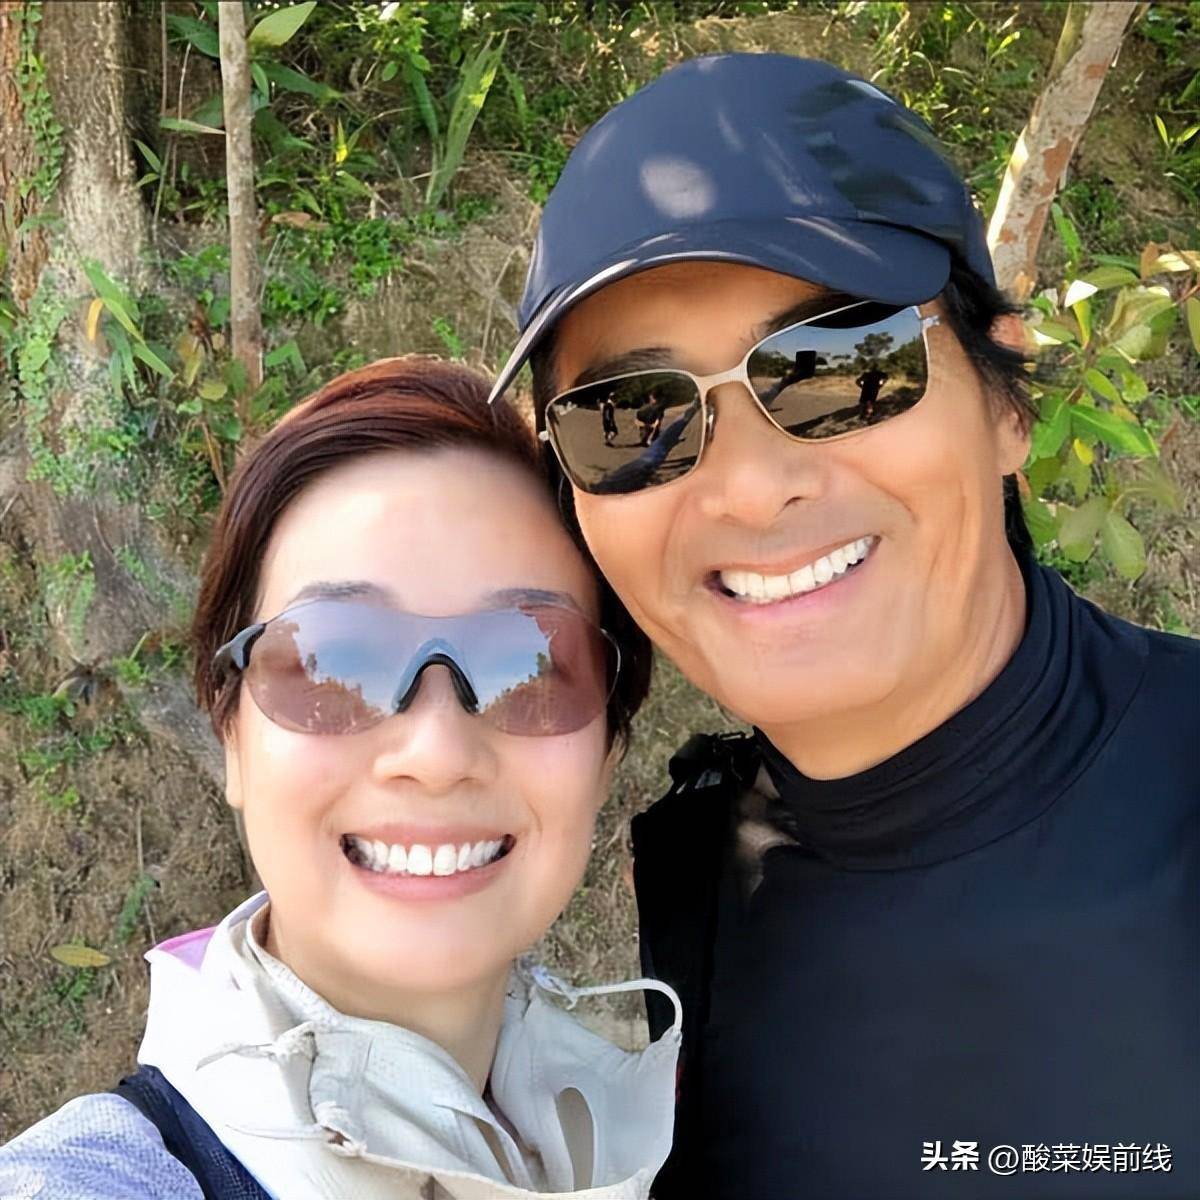 26年前与周润发合作演员的江美仪说周润发是她的徒步旅行教练